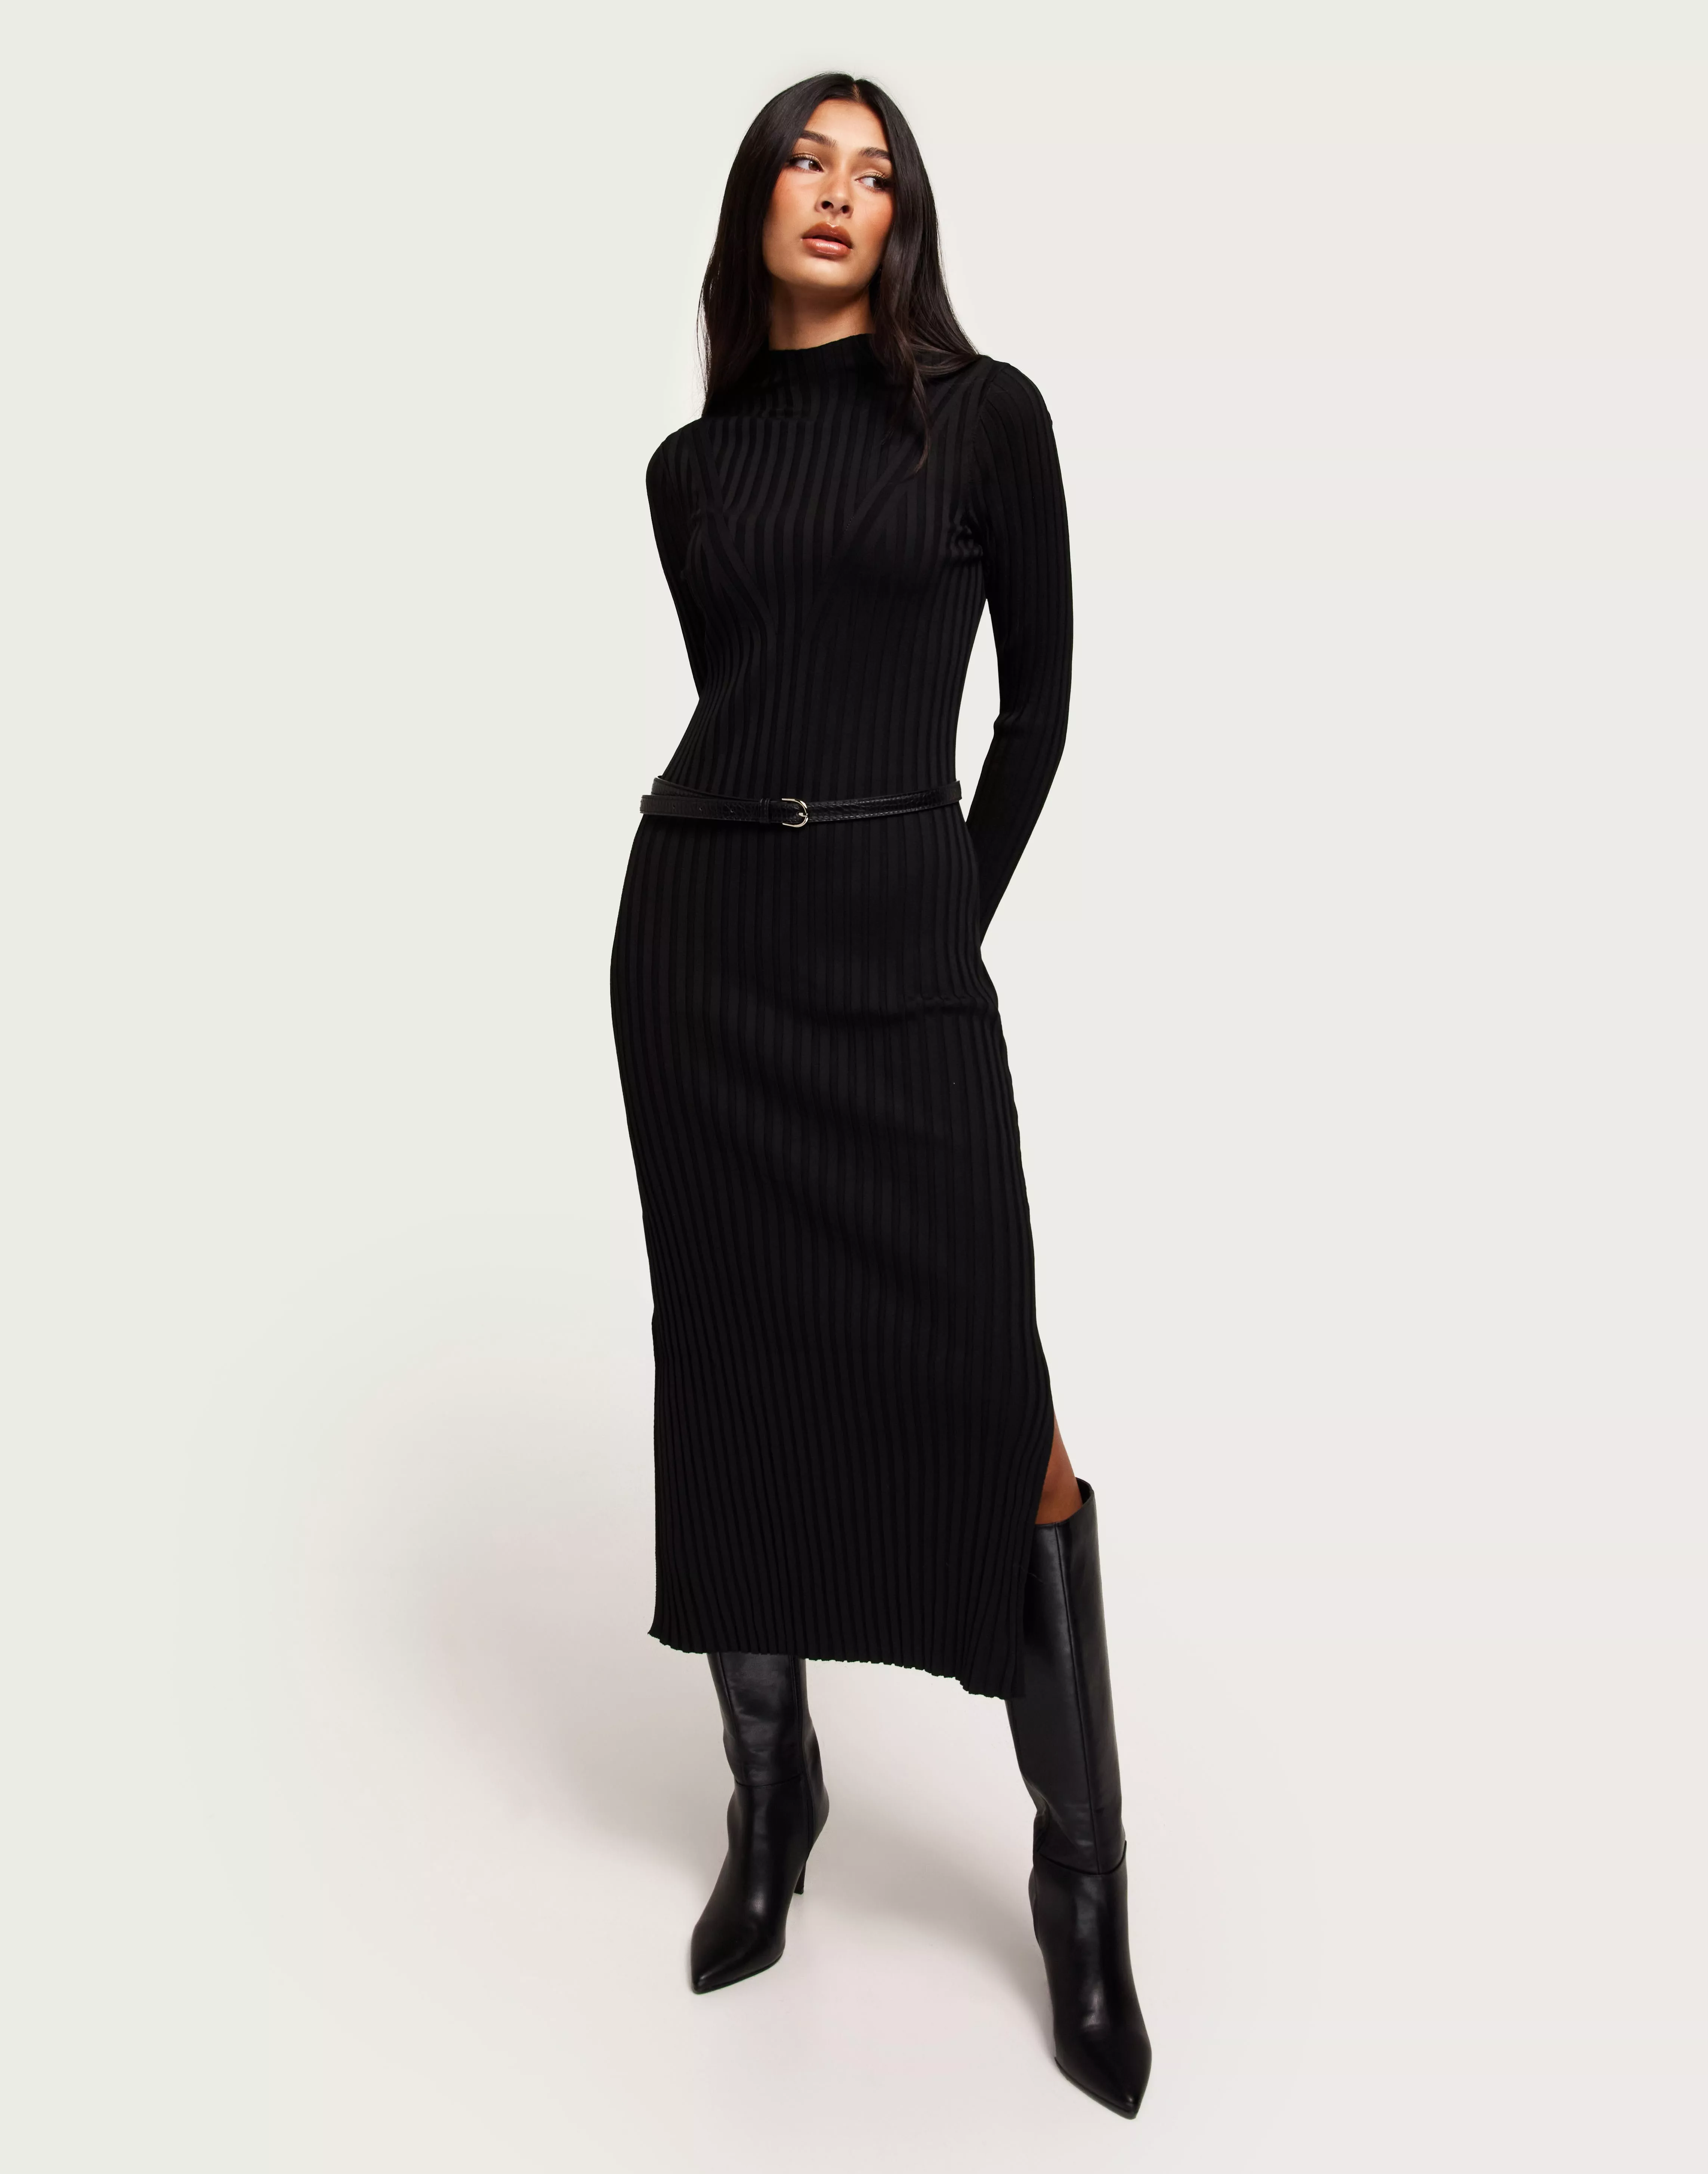 Black DRESS MAXI Buy LS - ONLTRIER HIGHNECK Only KNT